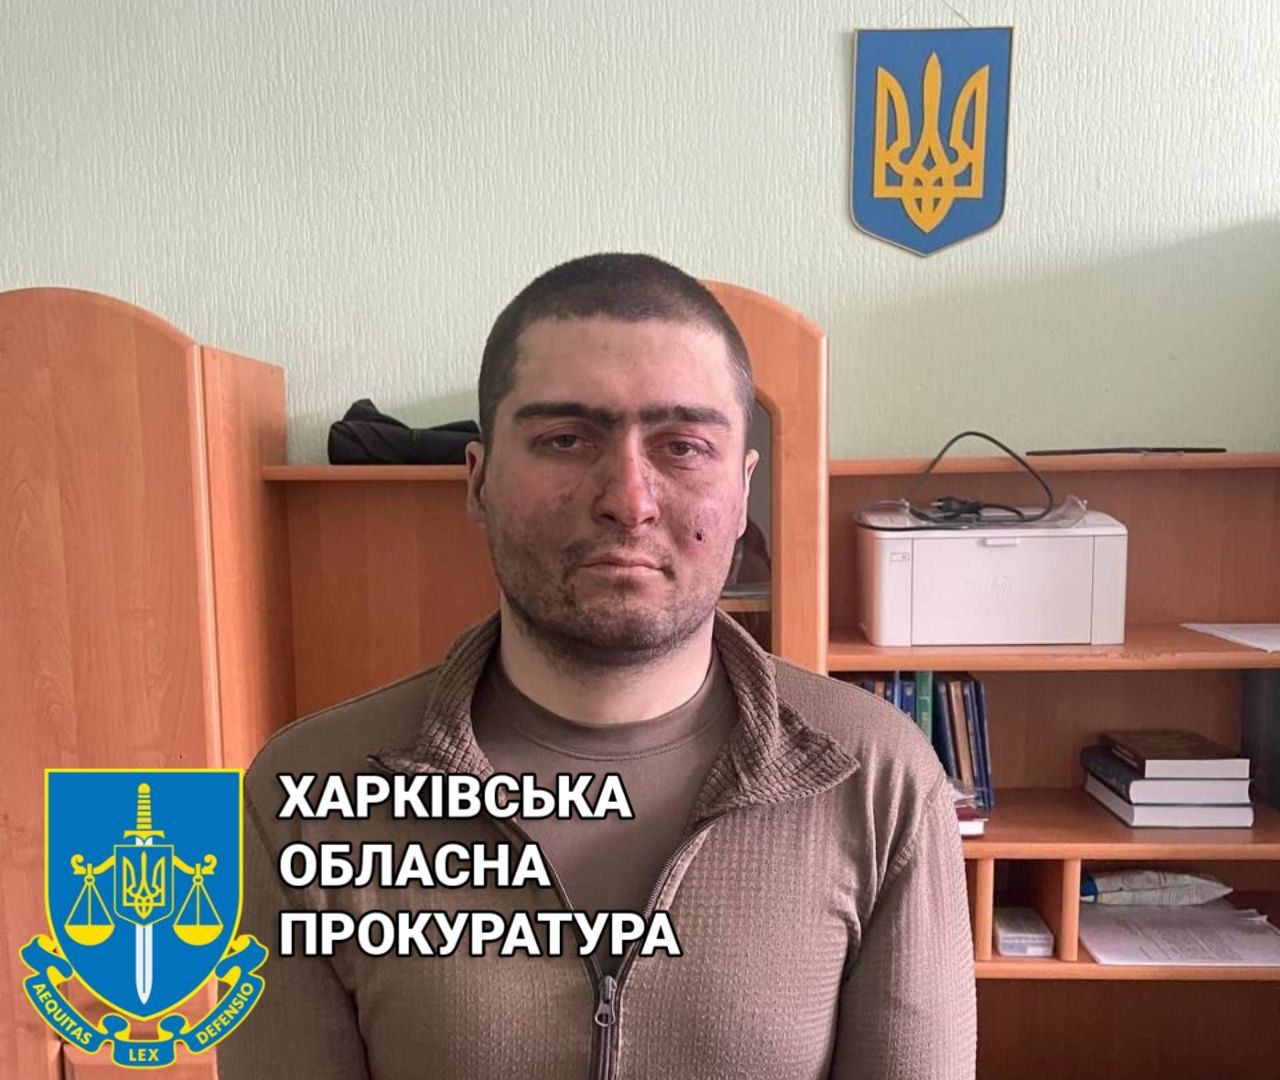 У Харкові затримано російського військовослужбовця - розпочато кримінальне провадження